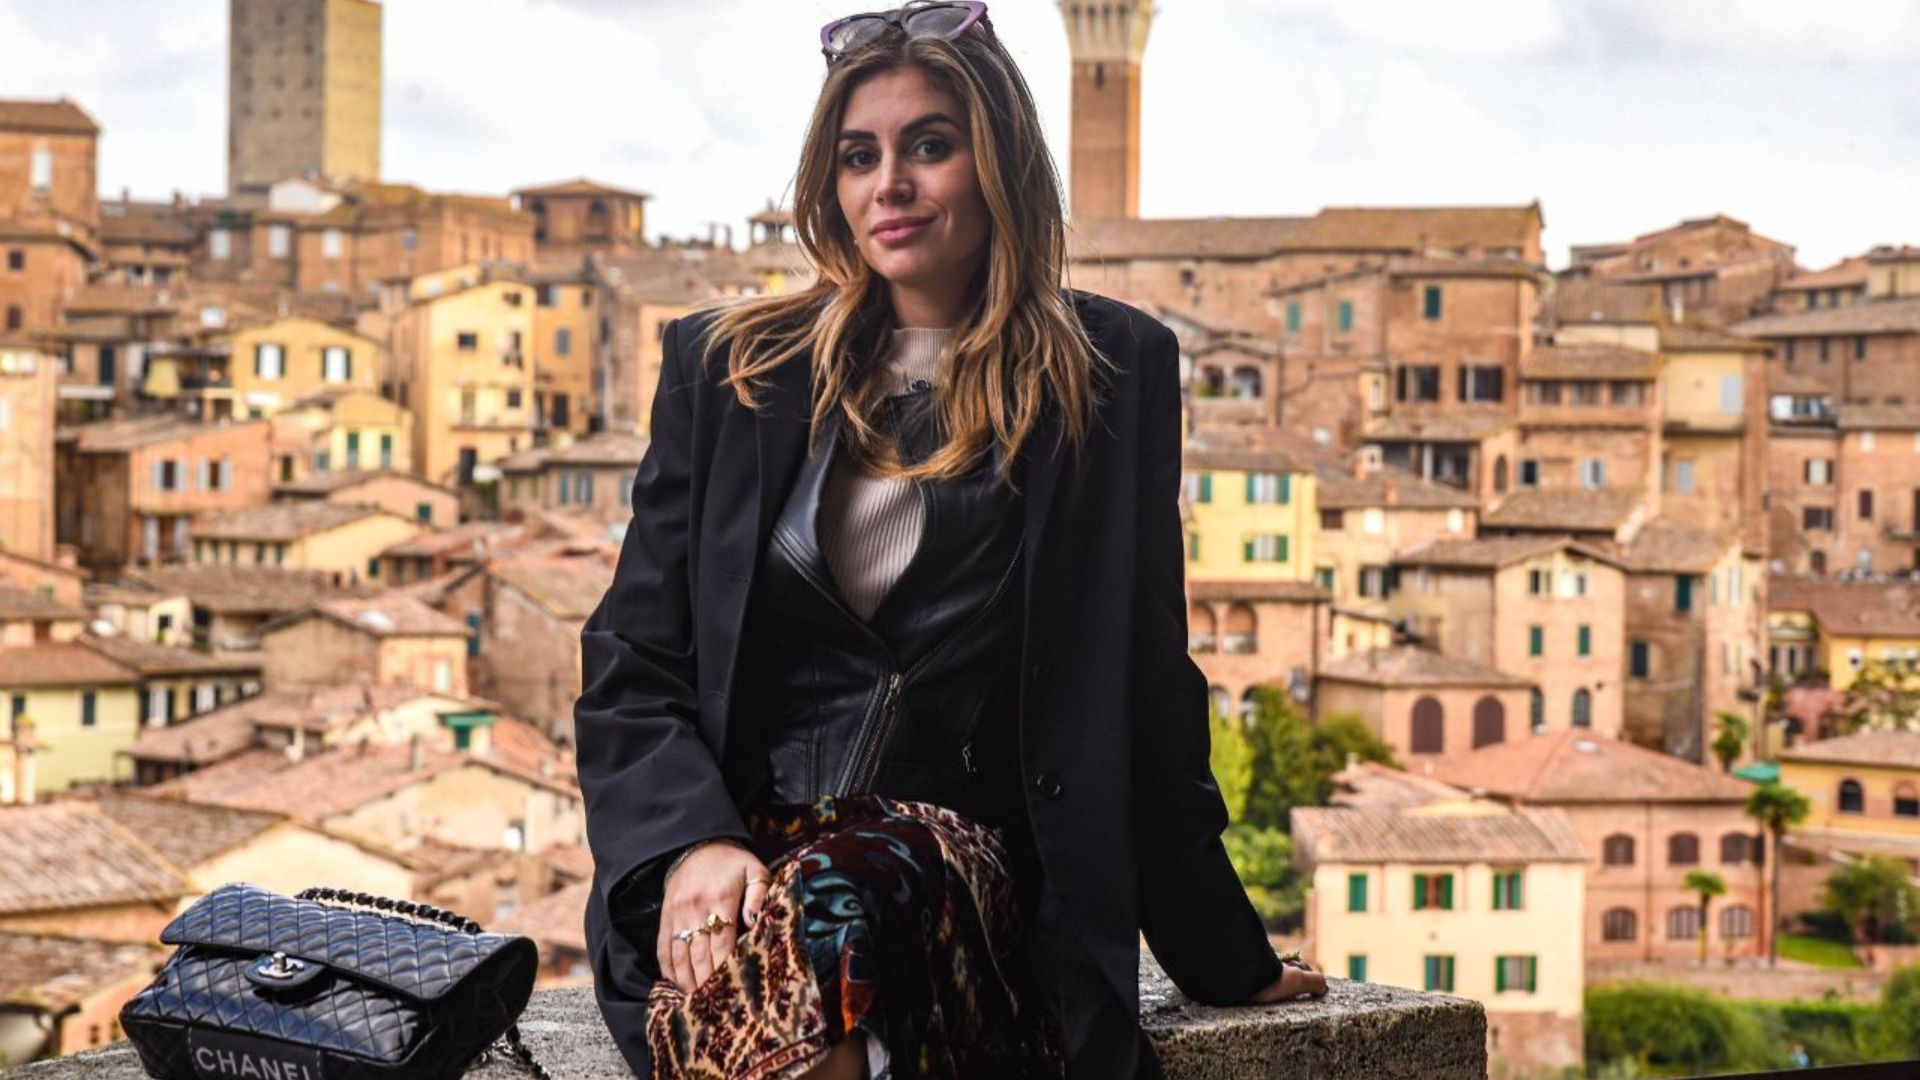 Scopri le bellezze del centro storico di Siena e immortala i tuoi ricordi con un servizio fotografico professionale